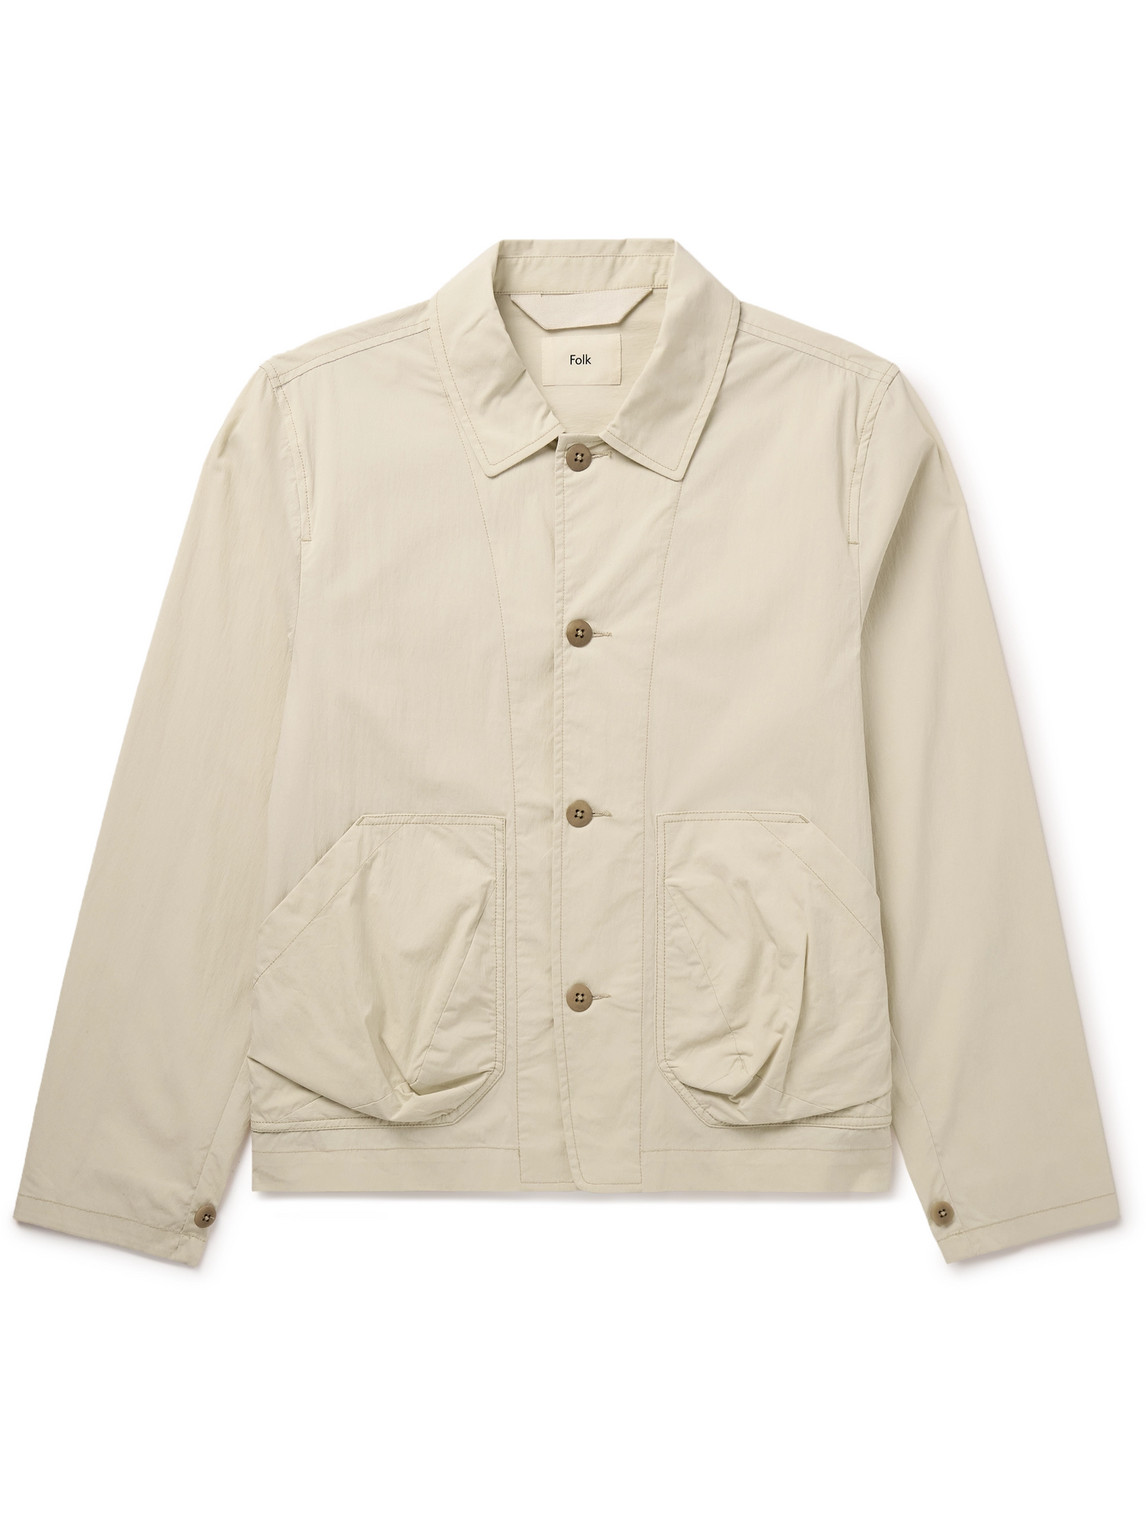 Prism Crinkled Cotton-Blend Poplin Jacket